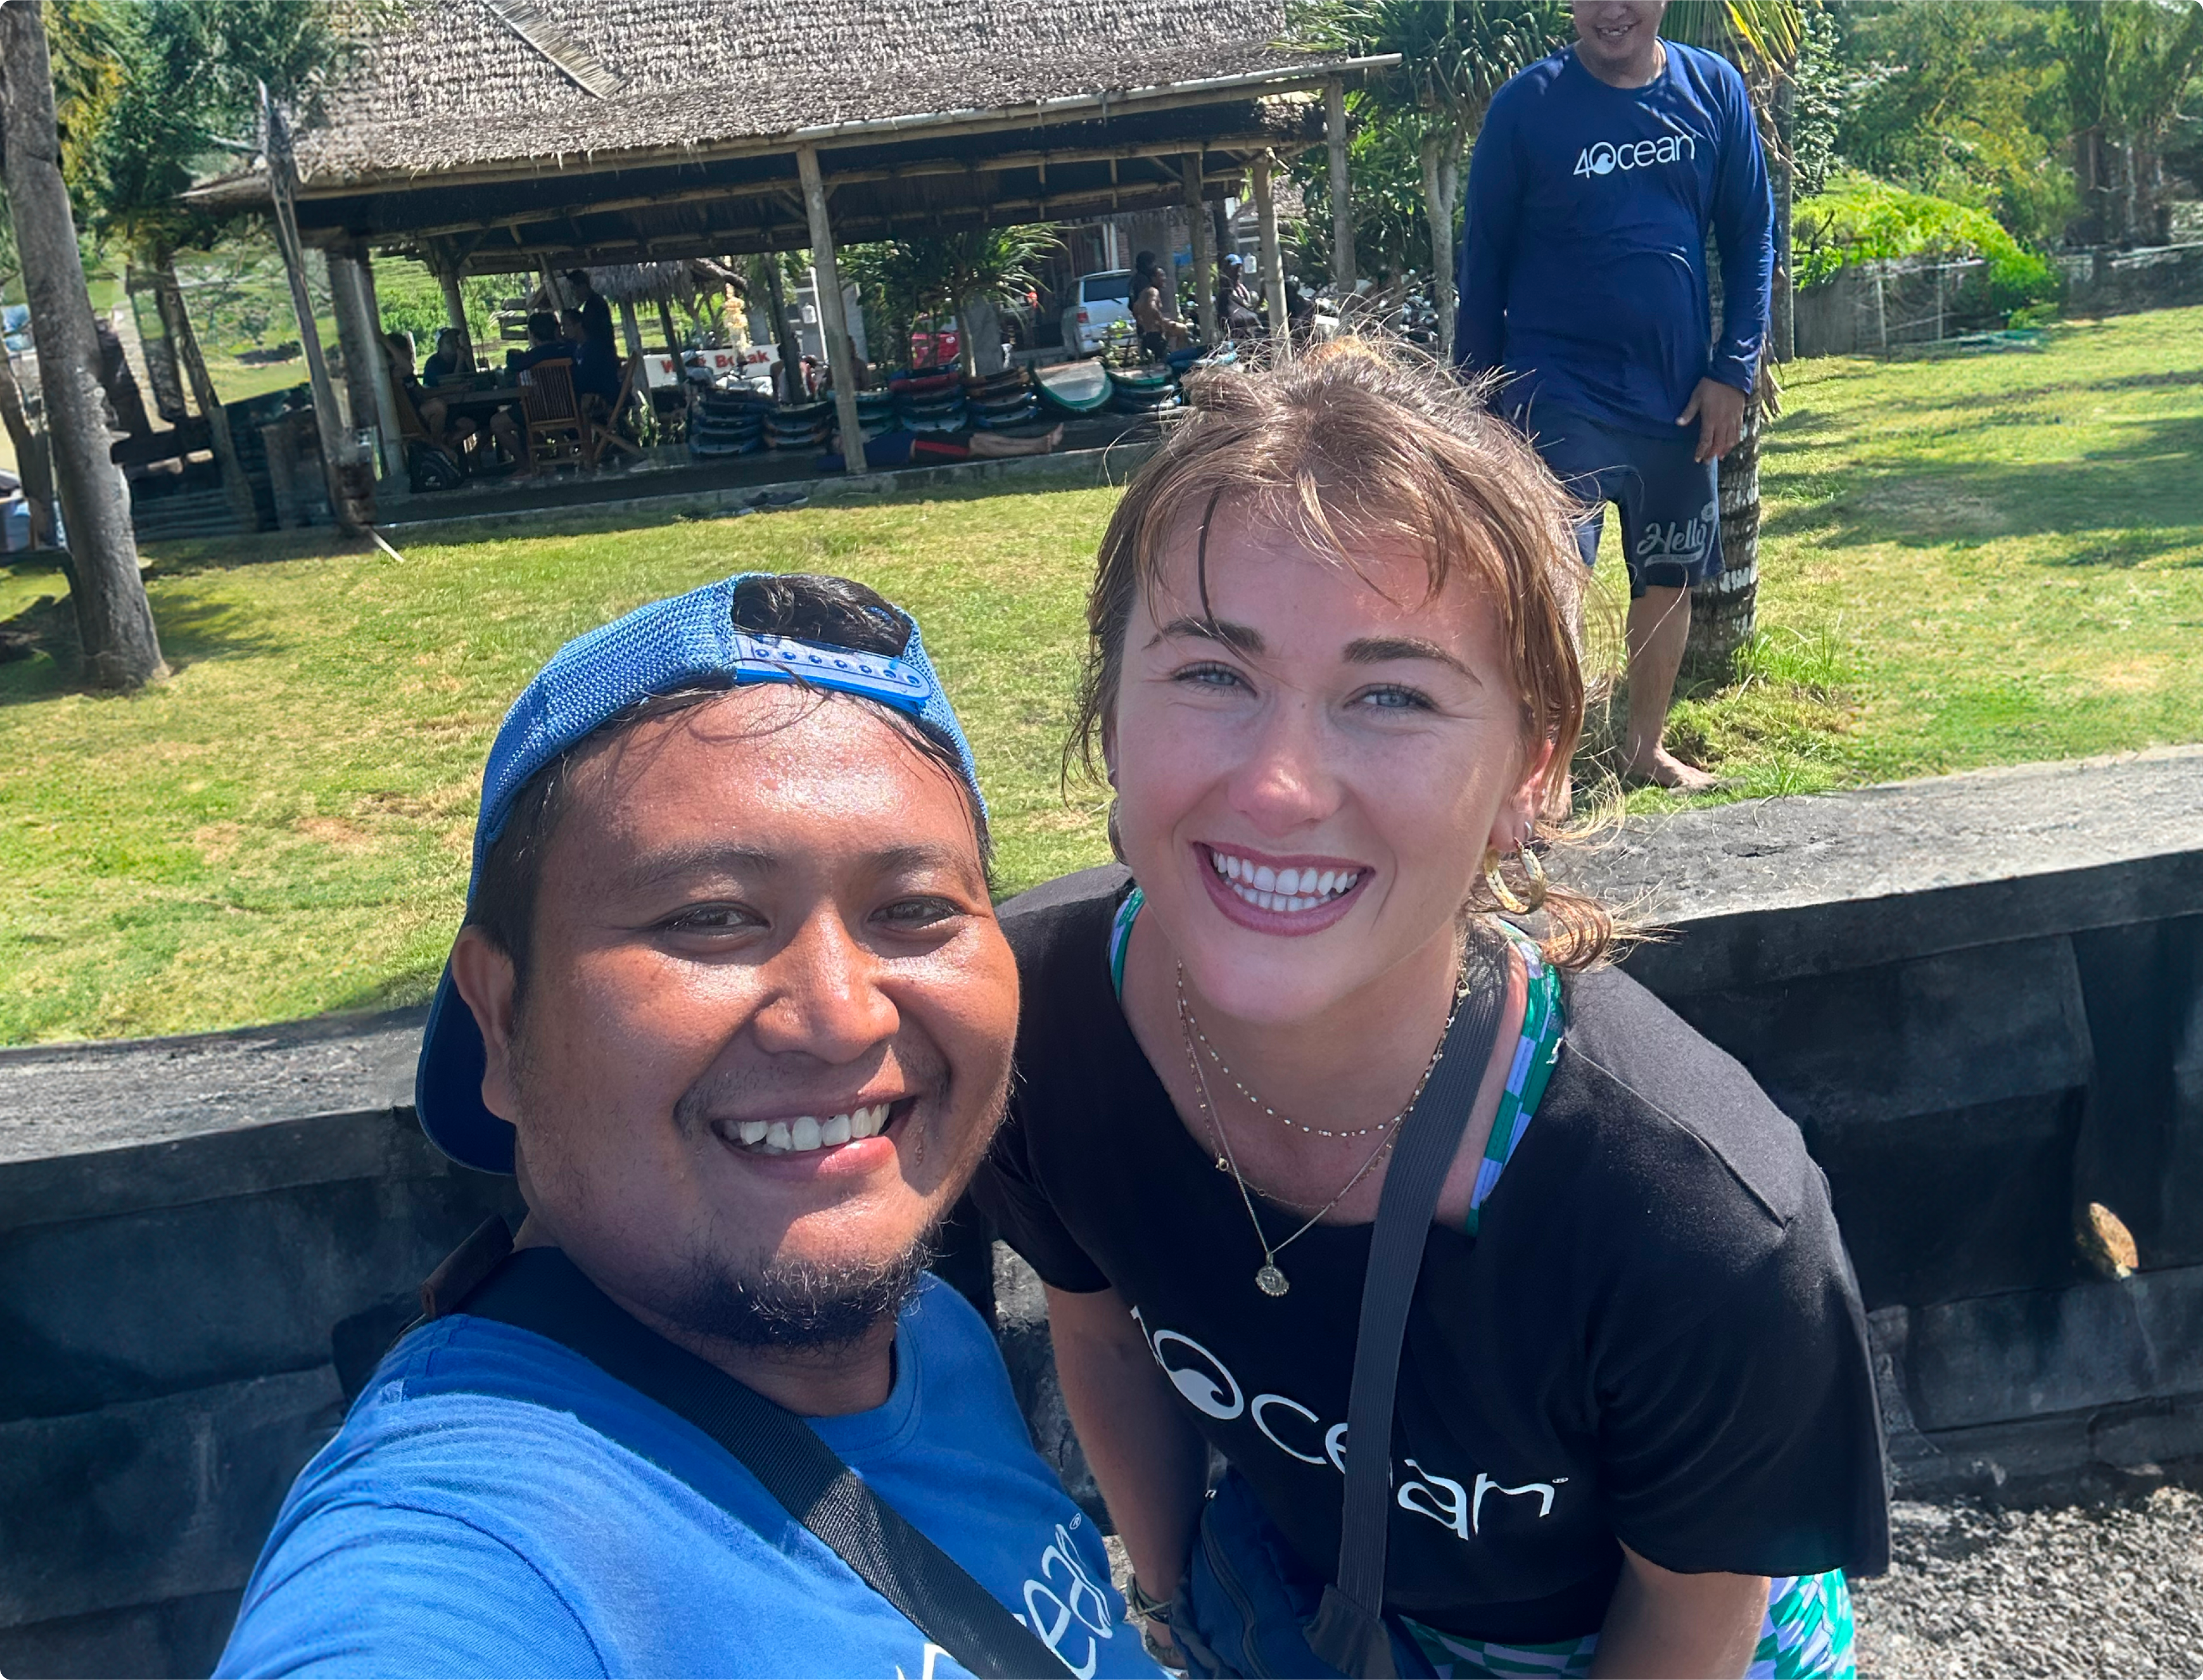 Selfie of Reyanne and a 4ocean volunteer.